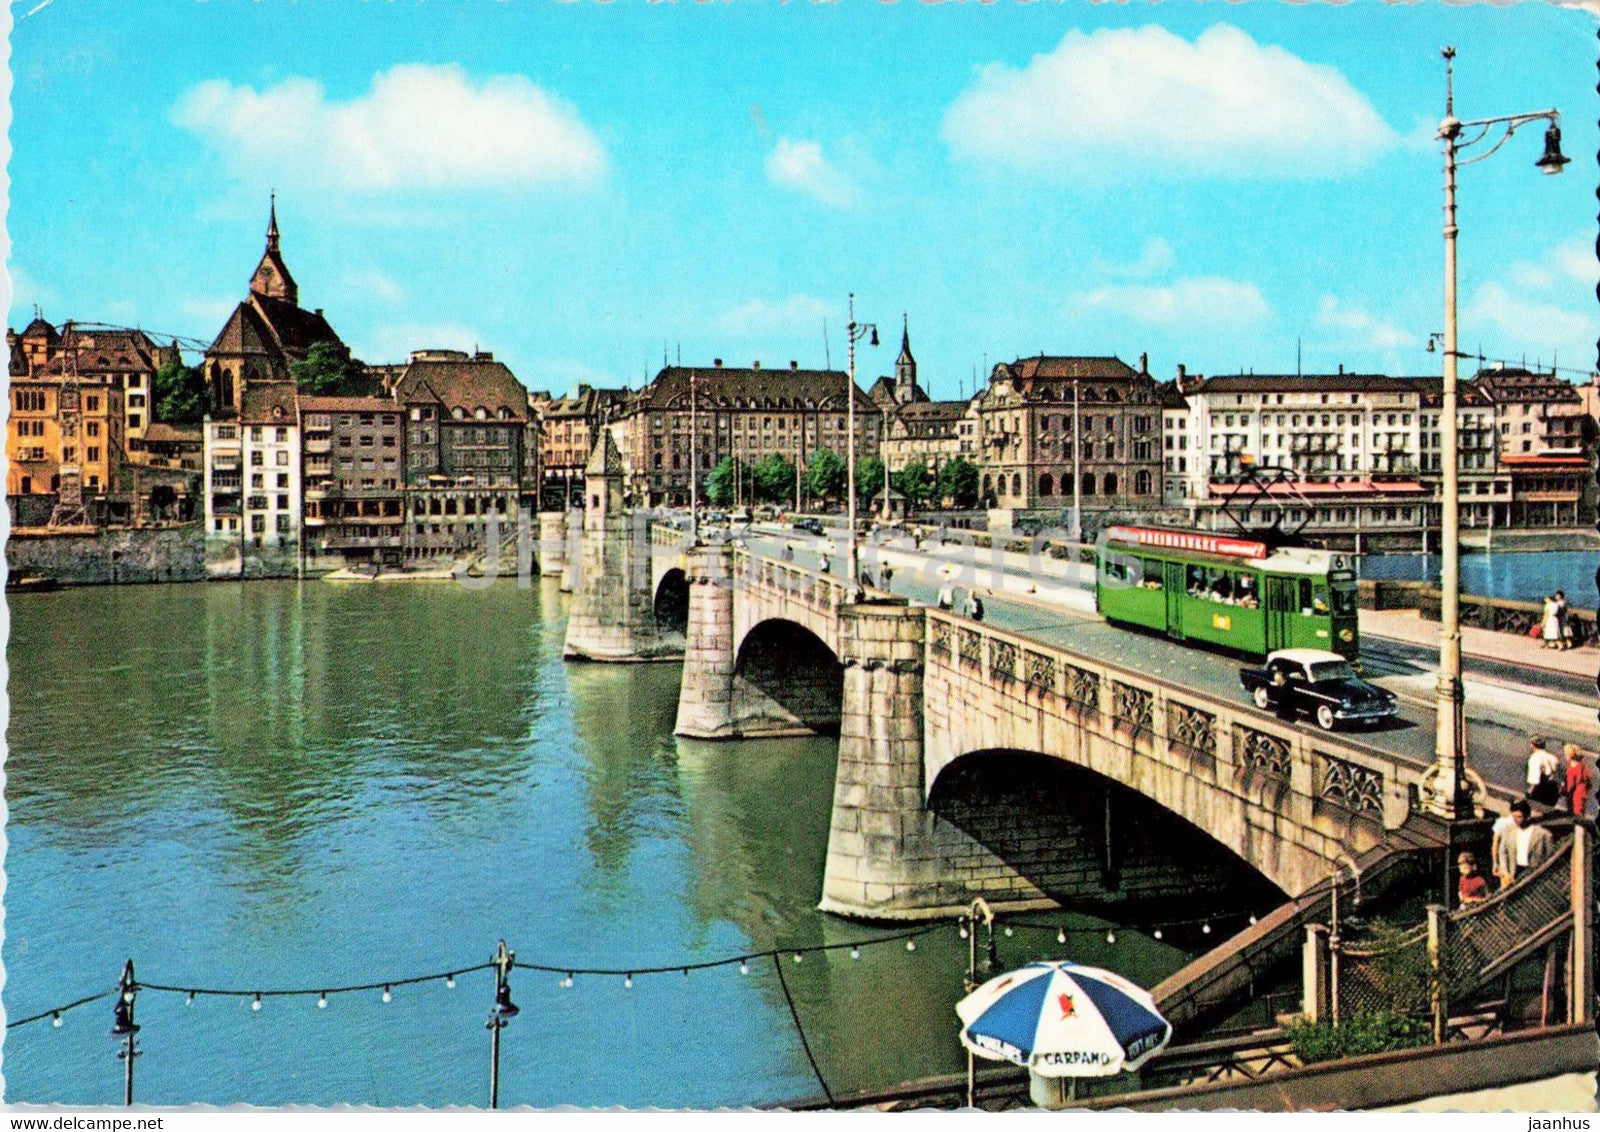 Basel - Basle - Mittlere Rheinbrucke und St Martinskirche - bridge - tram - 1966 - Switzerland - used - JH Postcards